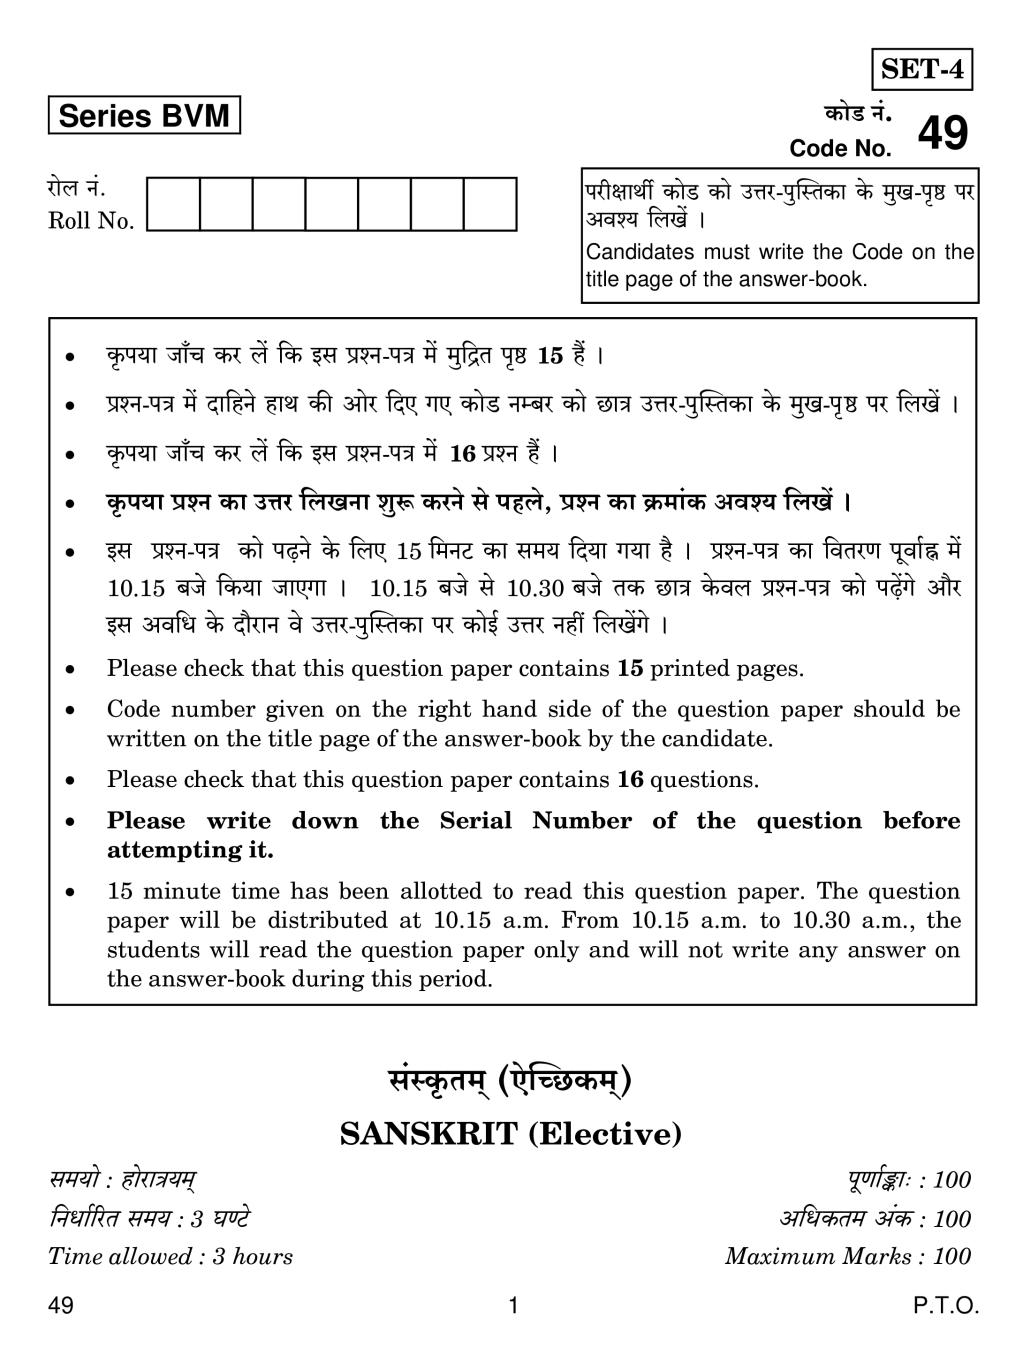 CBSE Class 12 Sanskrit Elective Question Paper 2019 Set 2 - Page 1